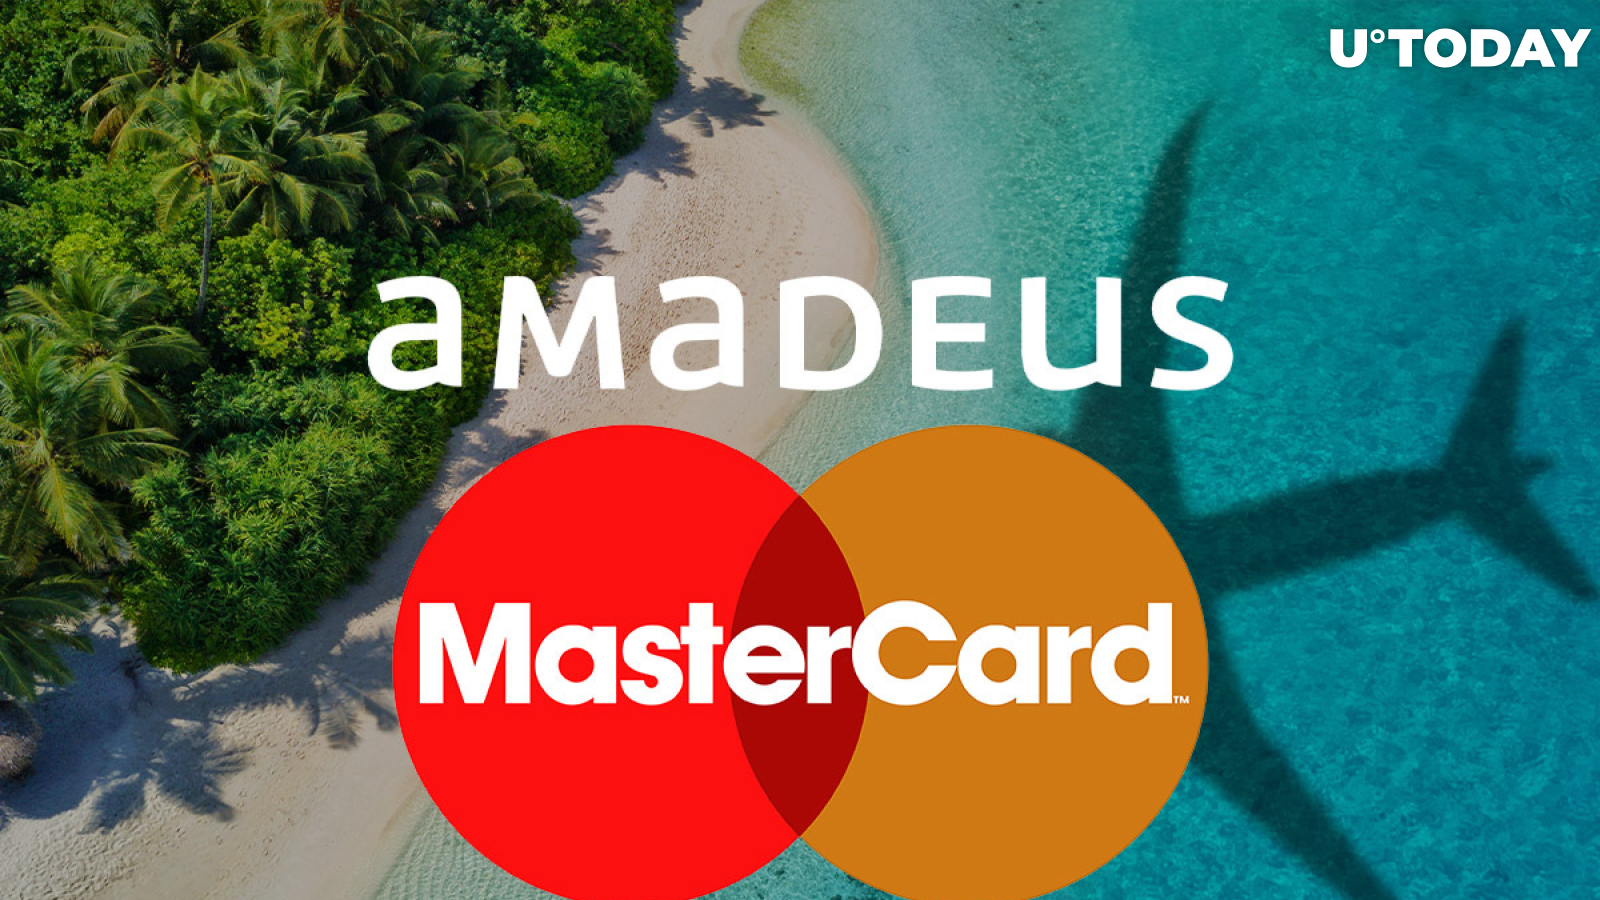 Travel Giant Amadeus Expands Mastercard Partnership